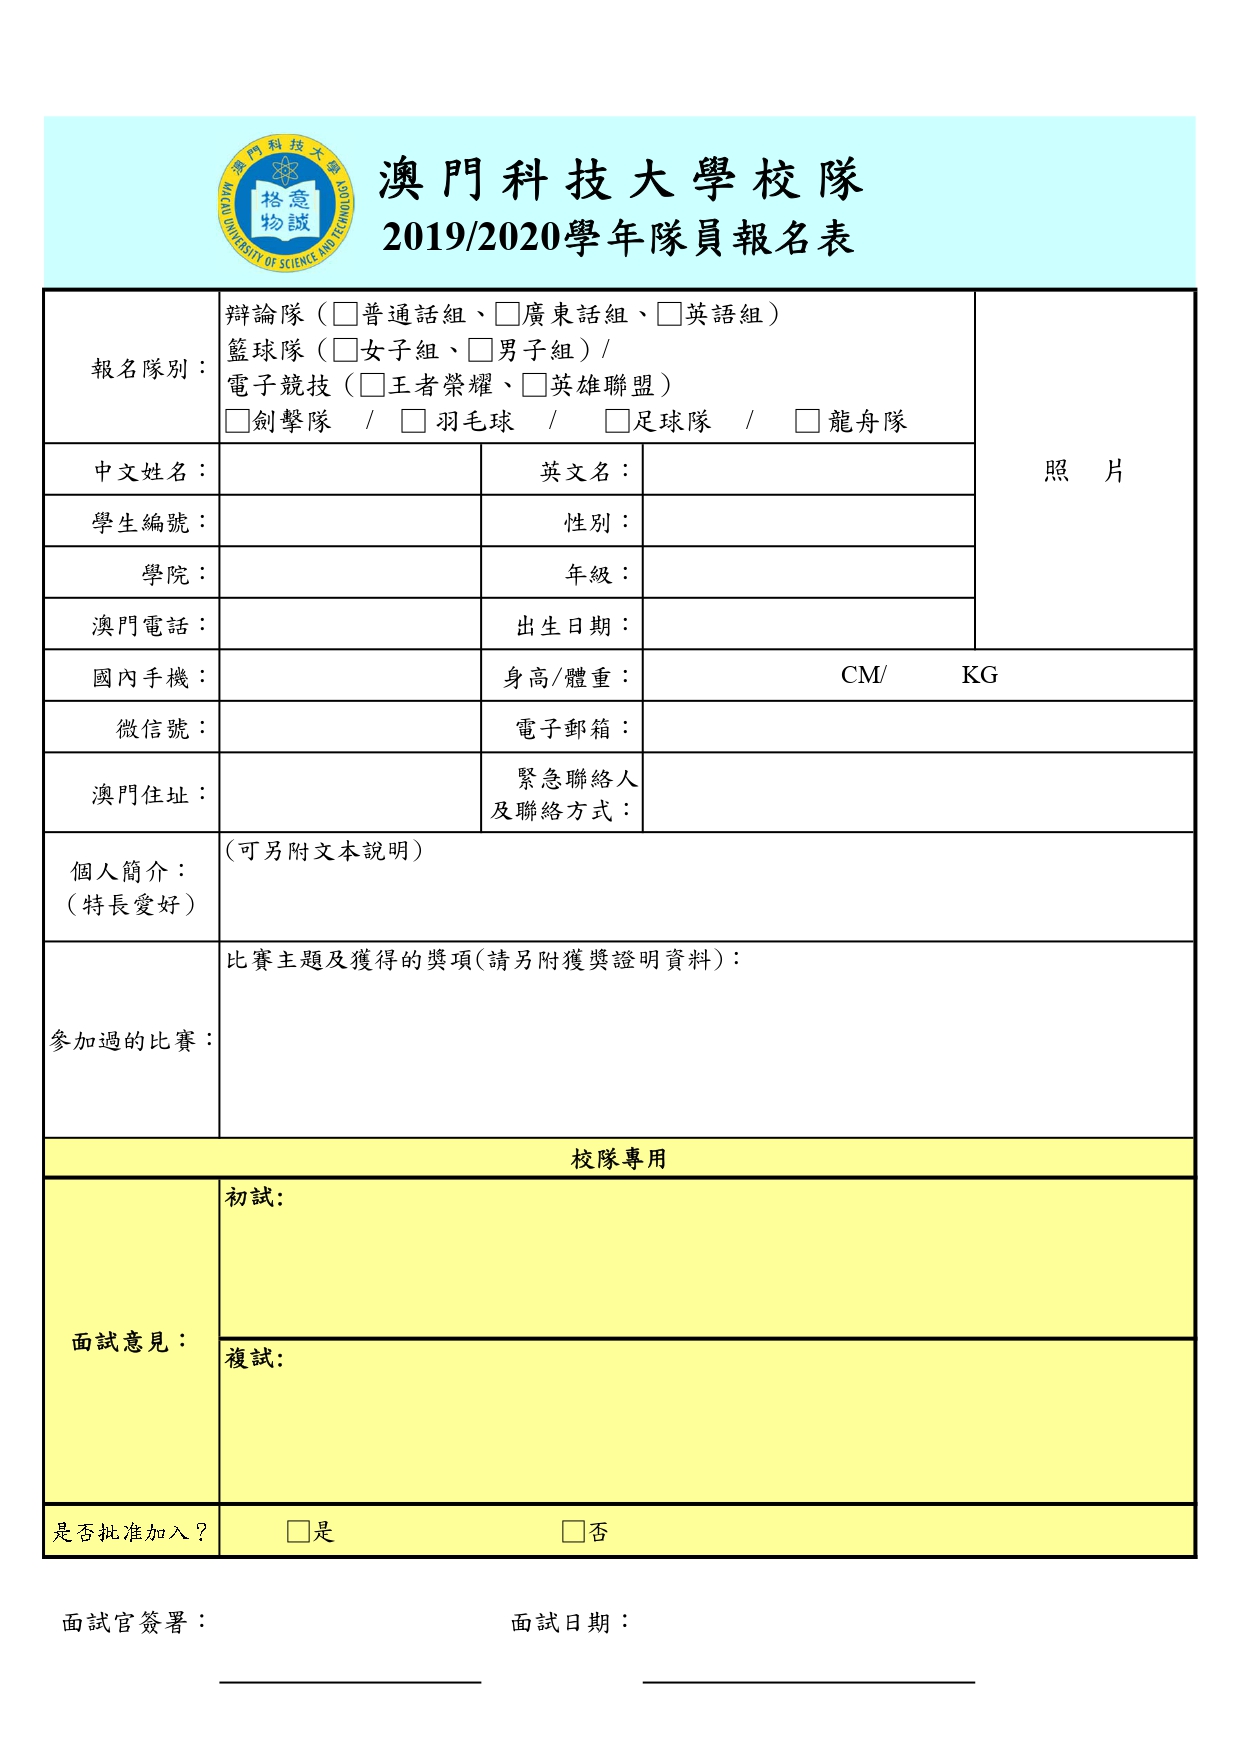 2019 2020校隊報名表 page 0001